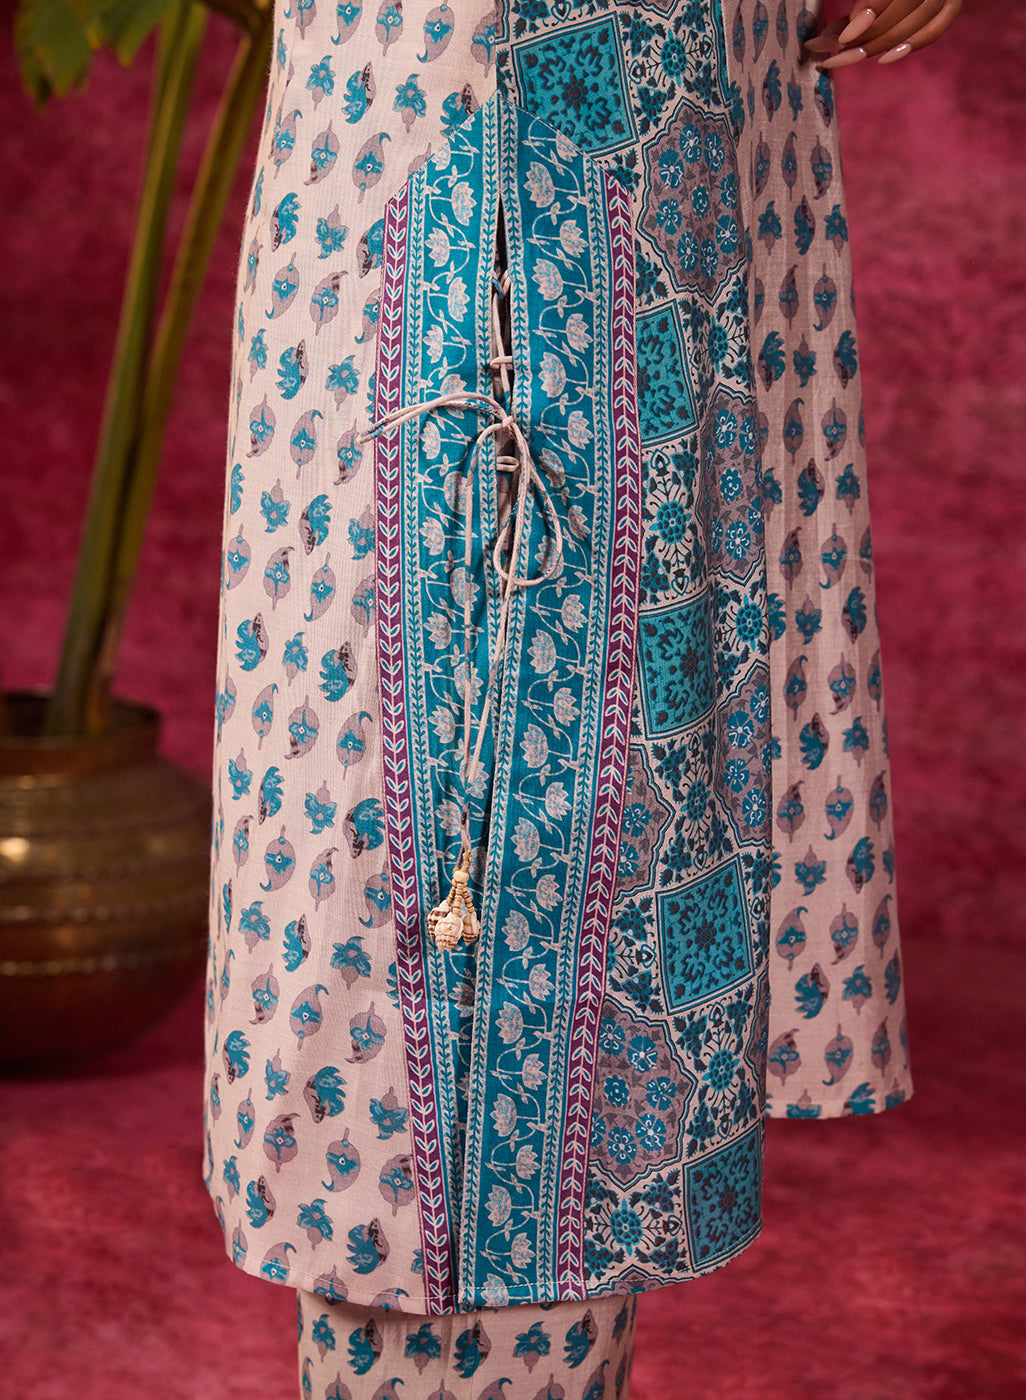 Apsara Teal Printed Cotton Silk Designer Kurta Set With Enhancing Tie-up Details From Lakshita